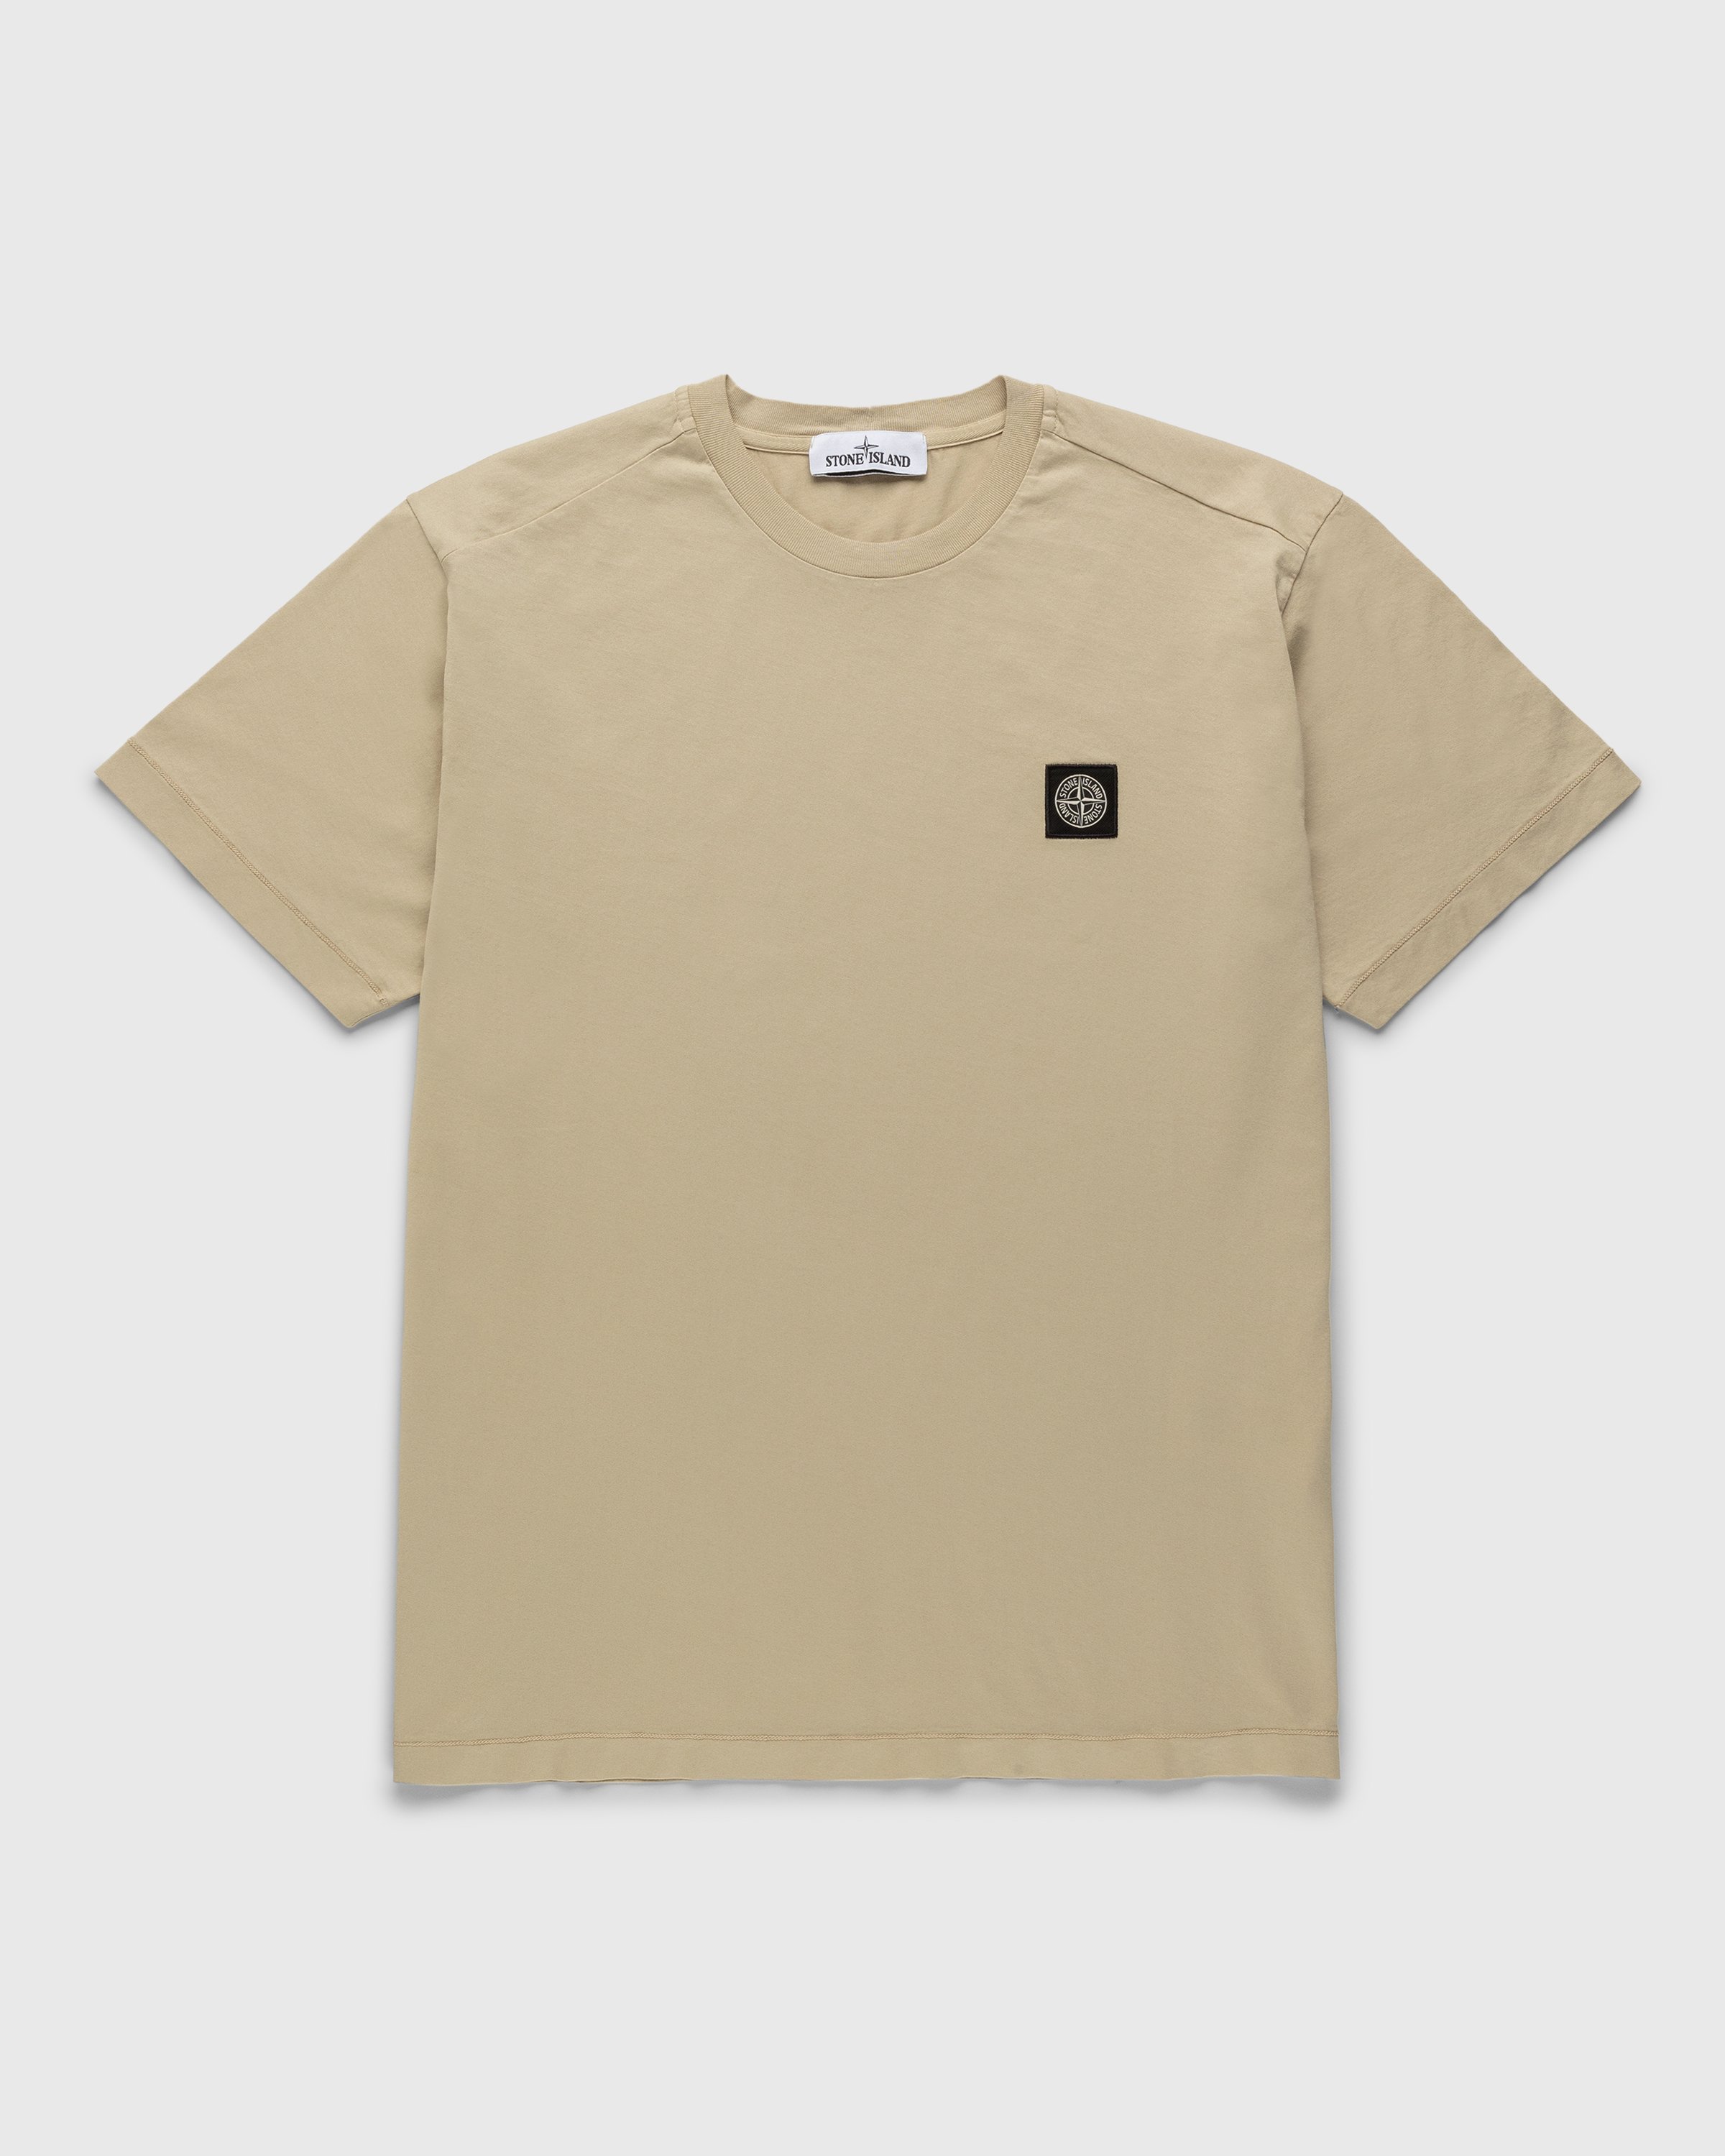 Stone Island - Garment-Dyed T-Shirt Beige - Clothing - Beige - Image 1